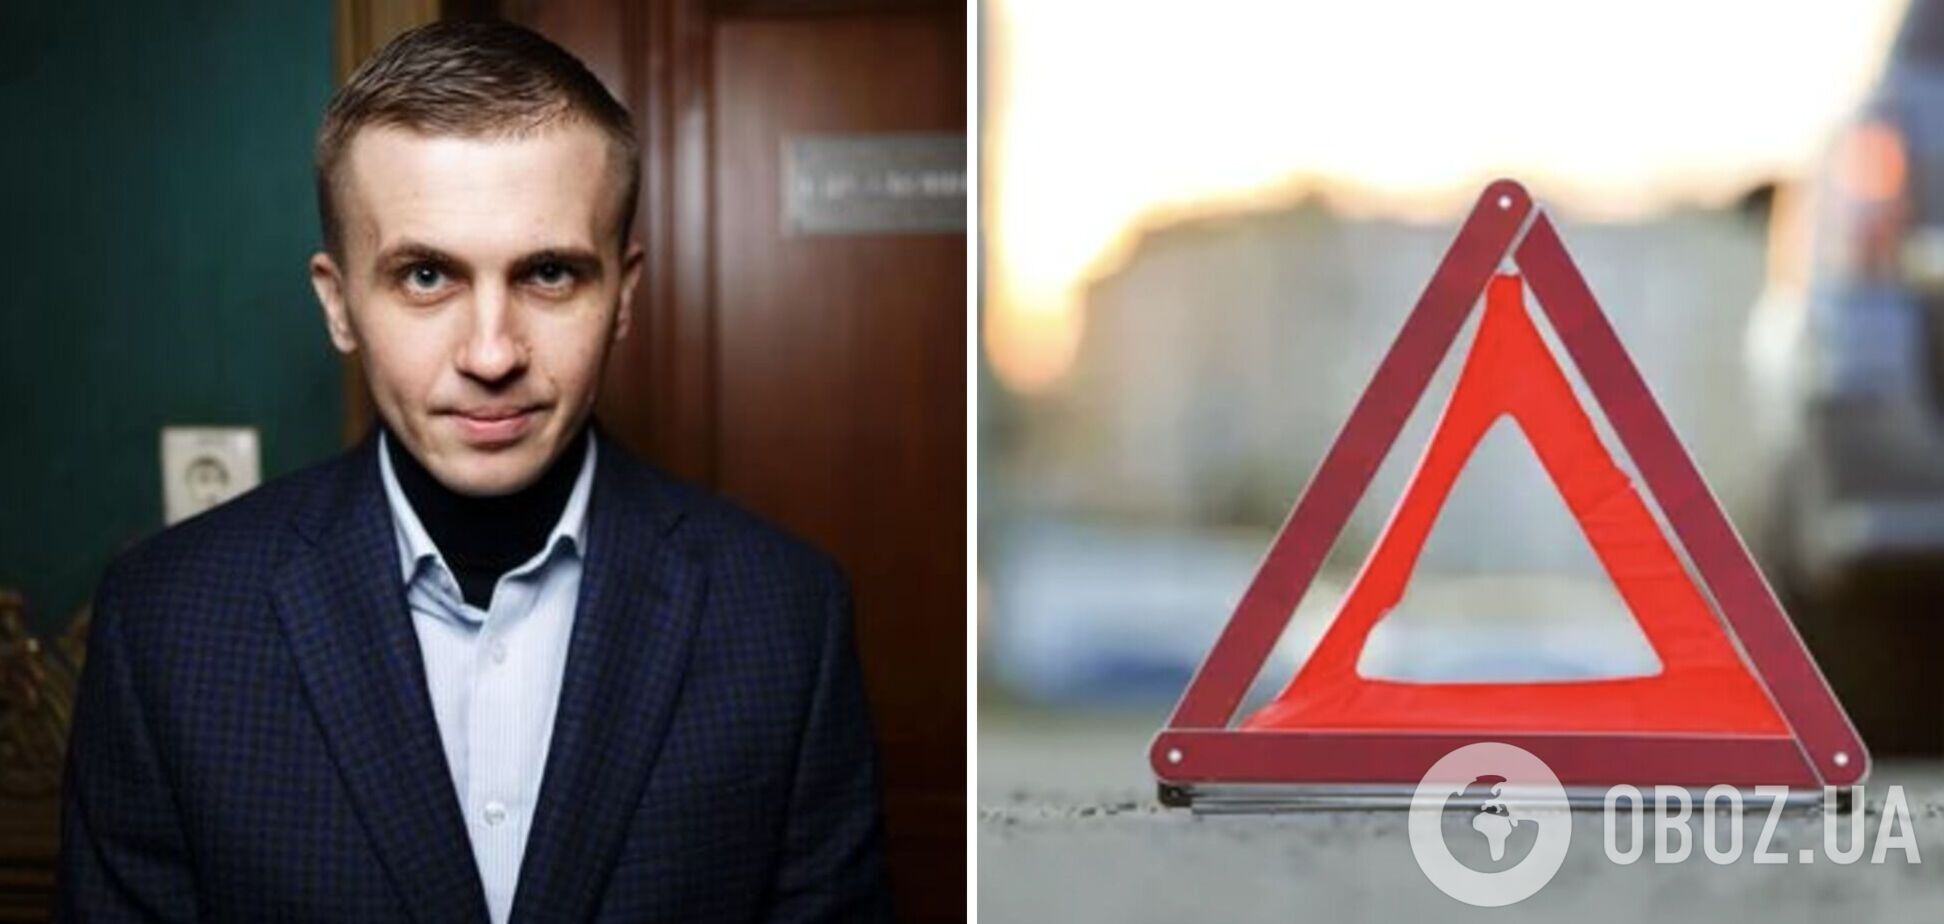 Відомого українського журналіста Ткача збила машина: з'явилися подробиці